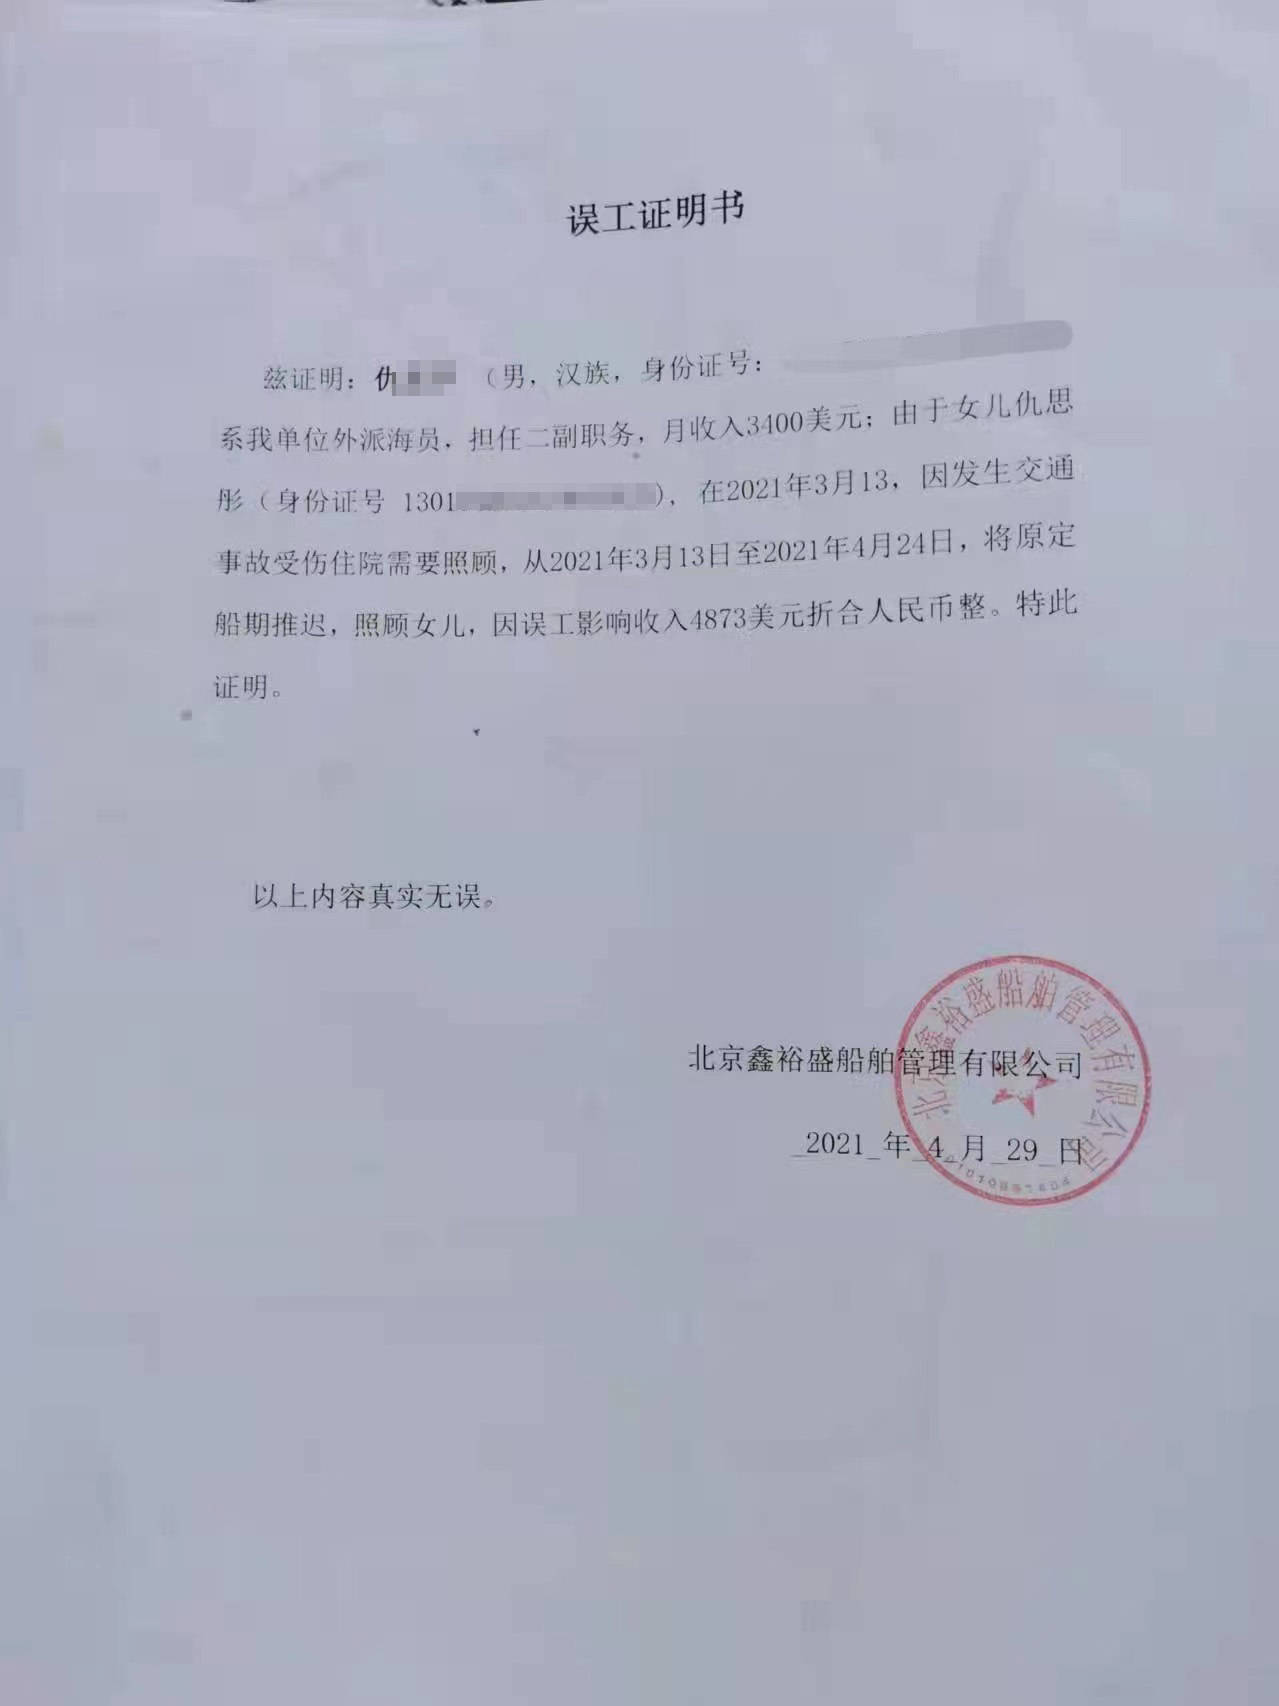 据仇先生所在的北京鑫裕盛船舶管理有限公司所开具的误工证明书显示